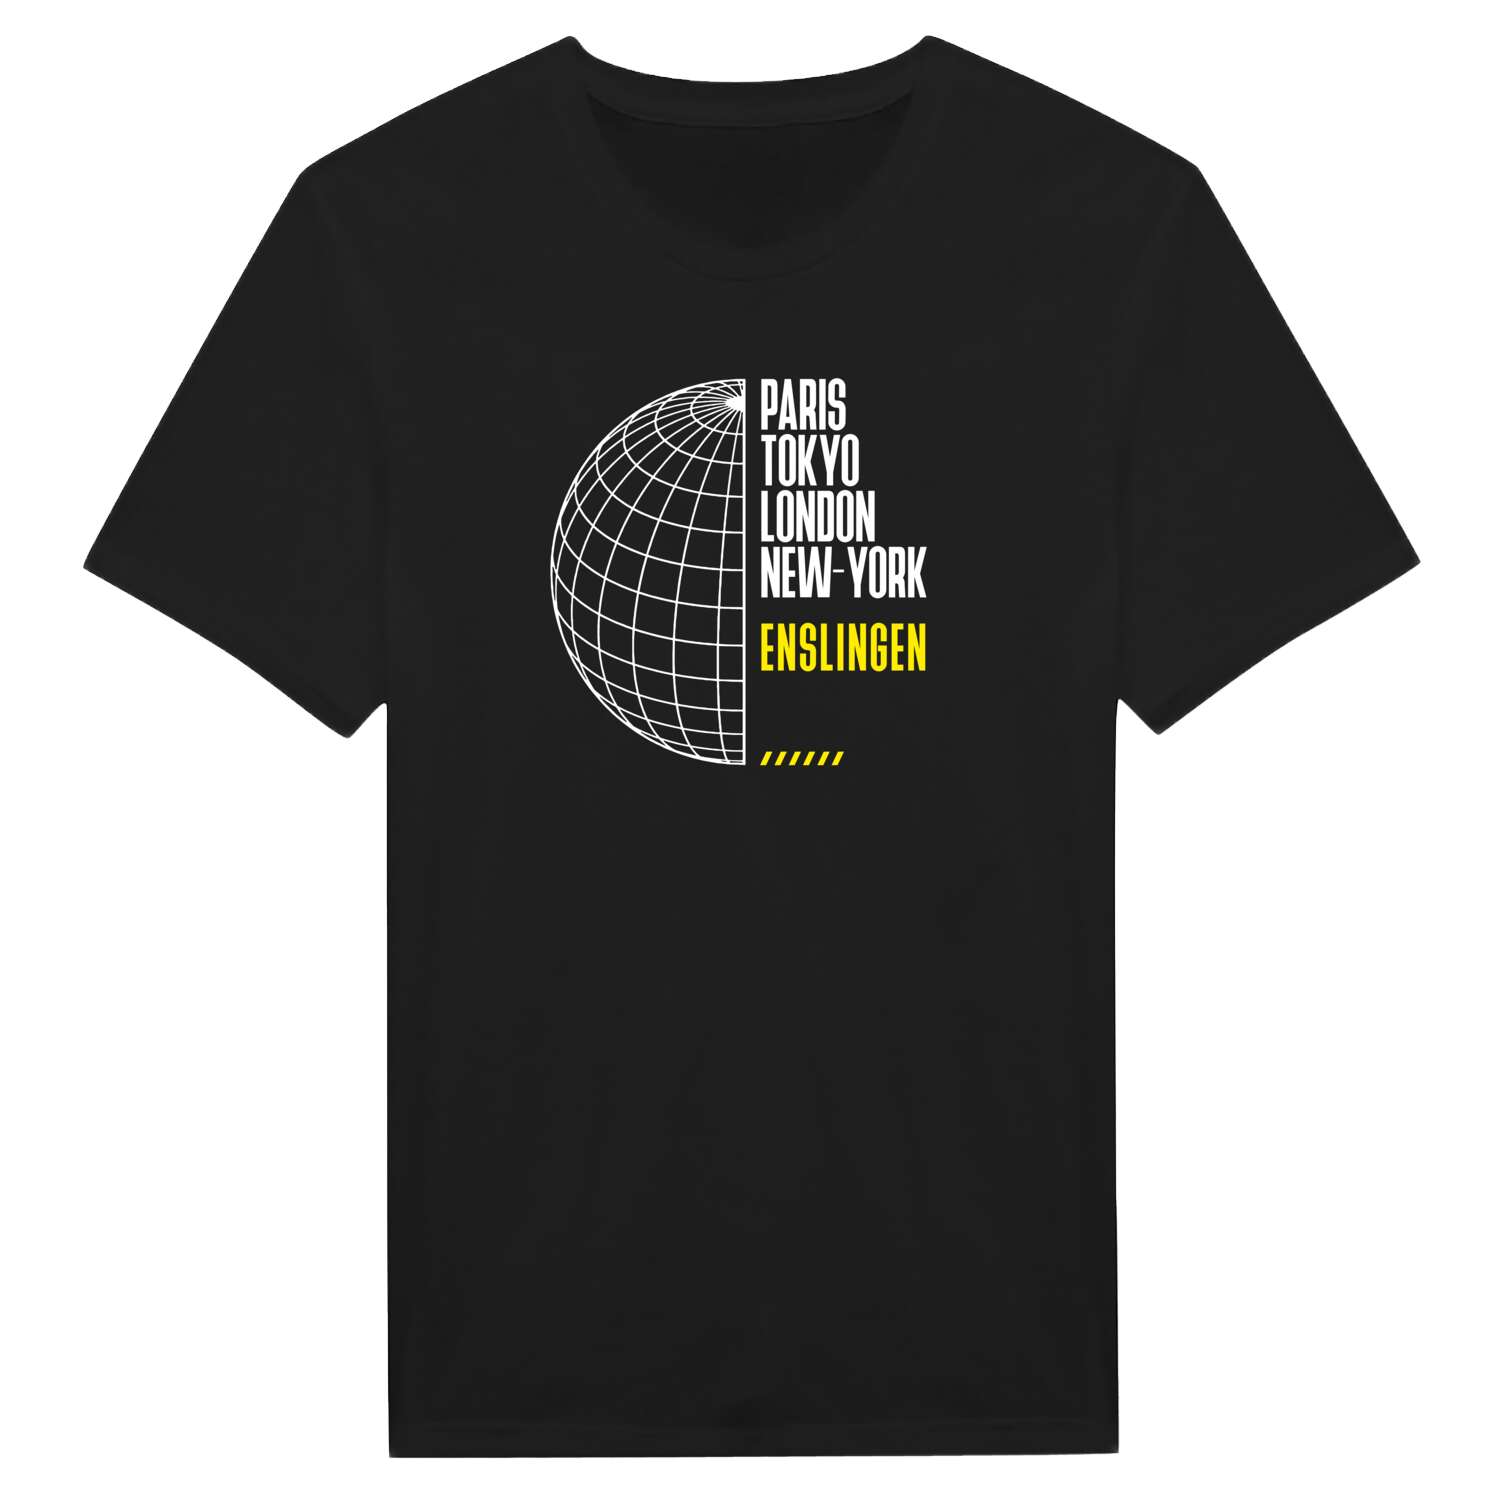 Enslingen T-Shirt »Paris Tokyo London«